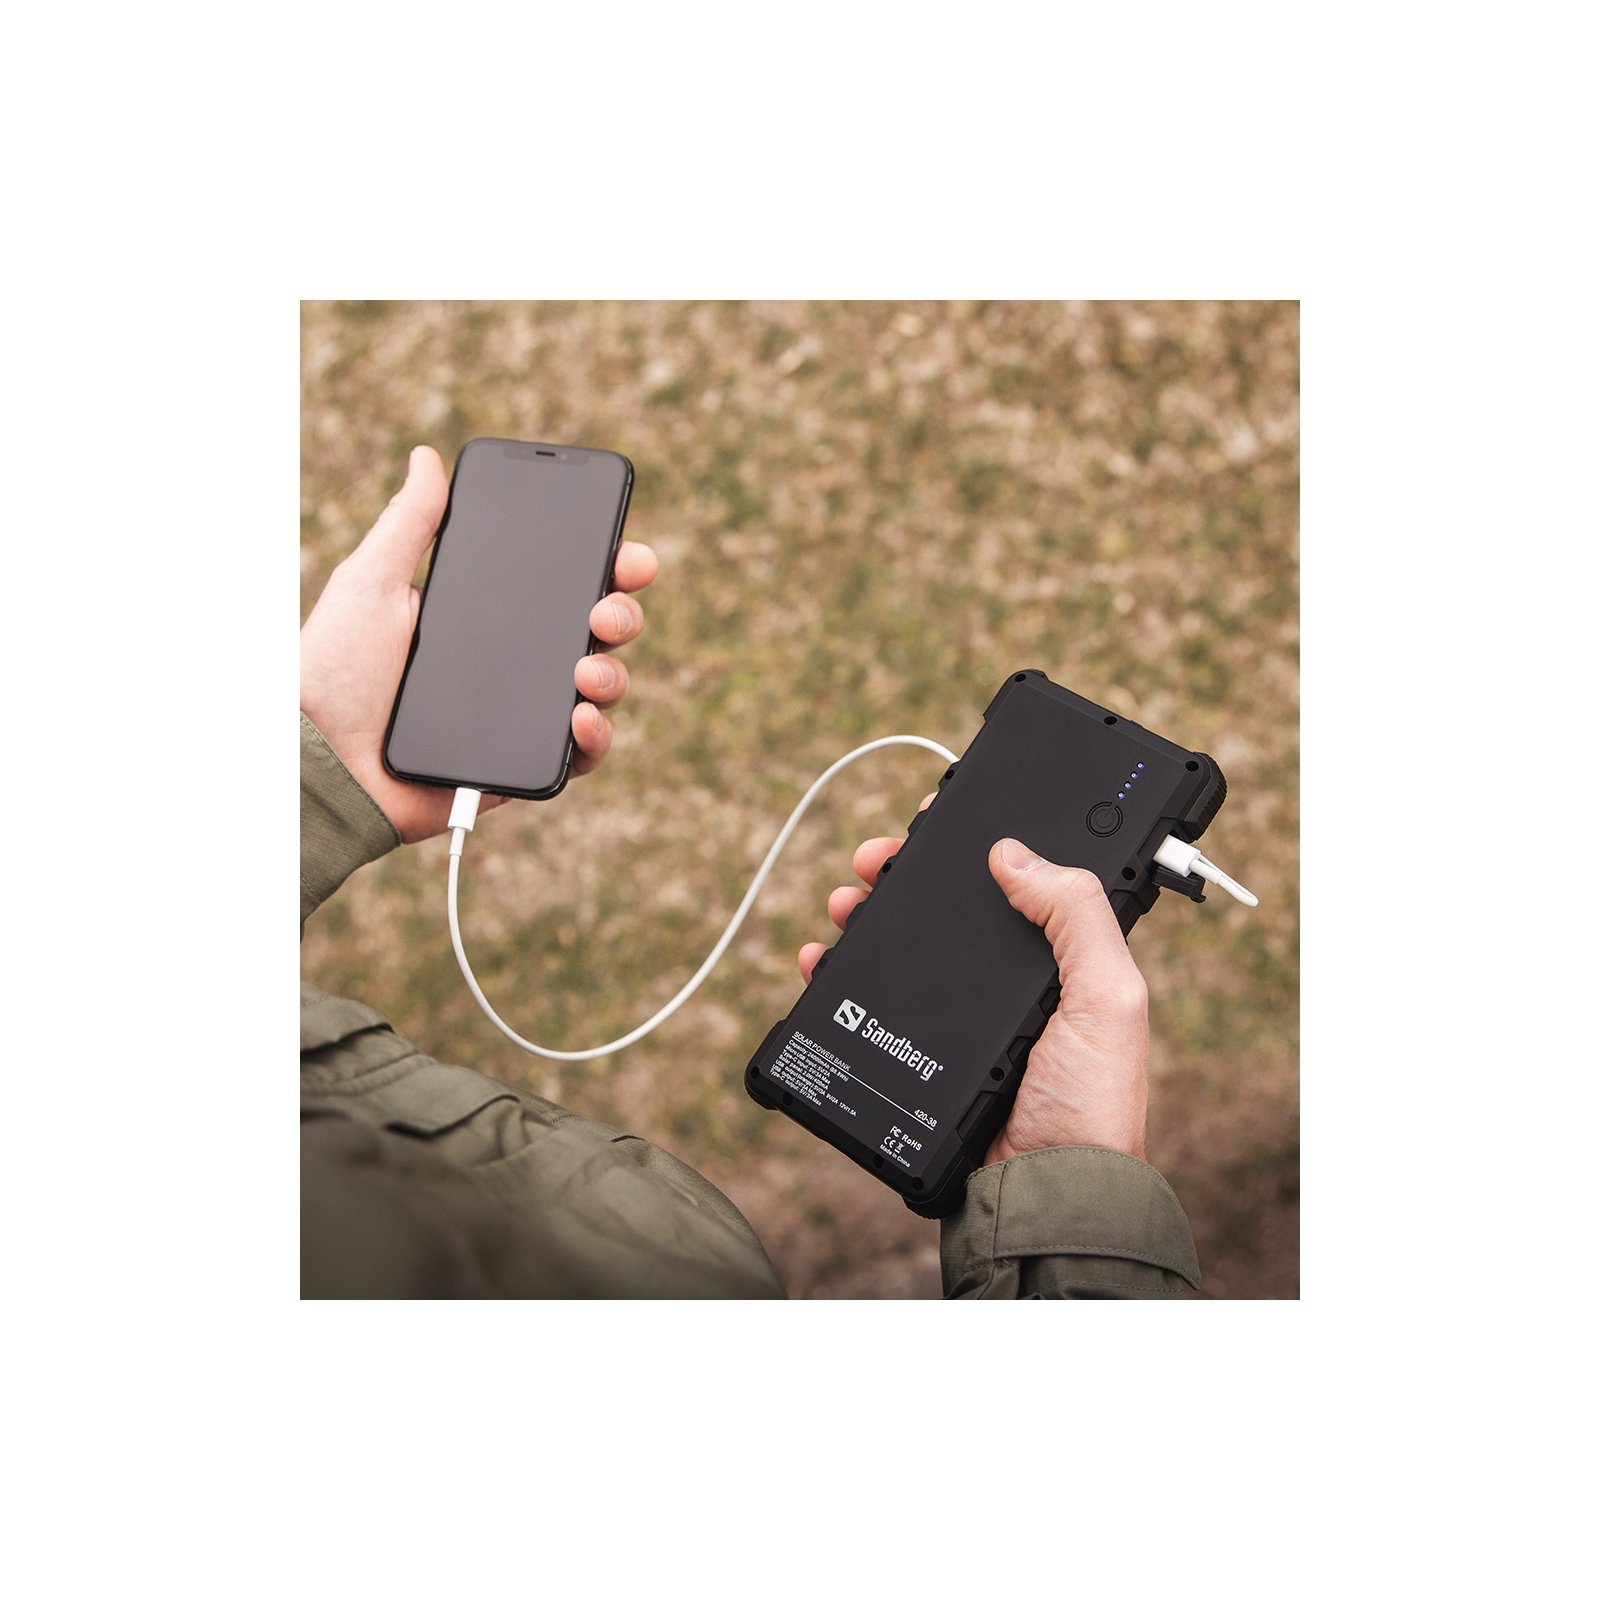 Батарея універсальна Sandberg 24000mAh, Outdoor, Solar panel:2W/400mA, flashlight, QC/3.0, USB-C, USB-A (420-38) зображення 3